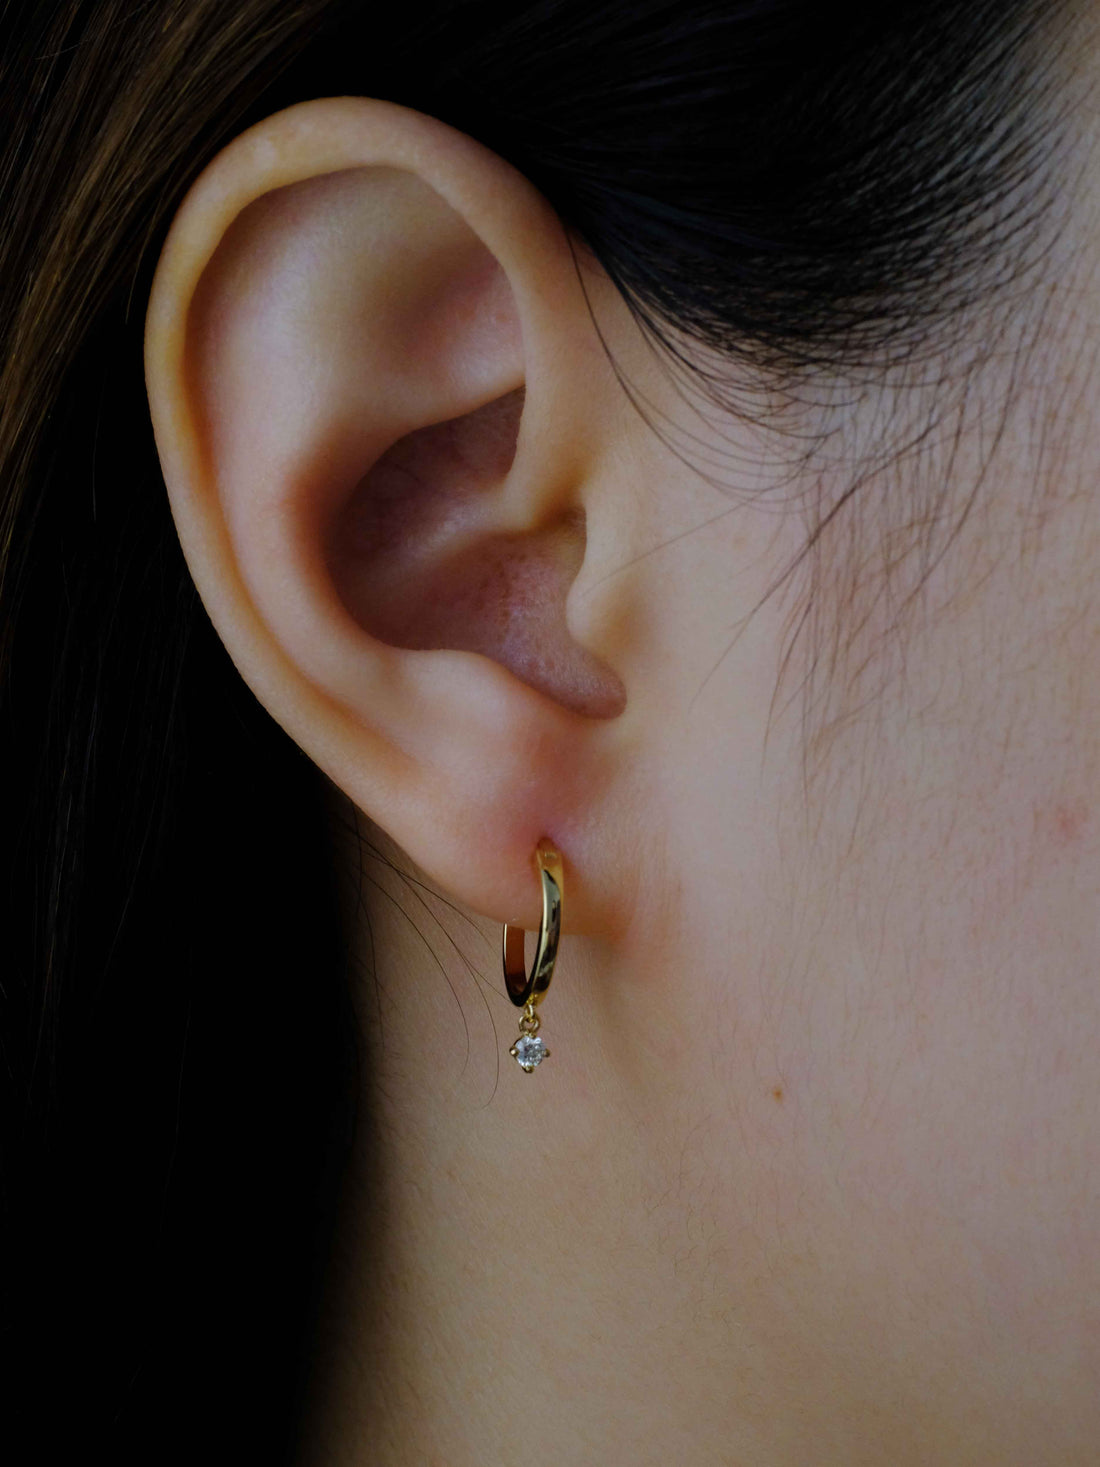 Round Diamond Hoop Earrings, 18k solid gold